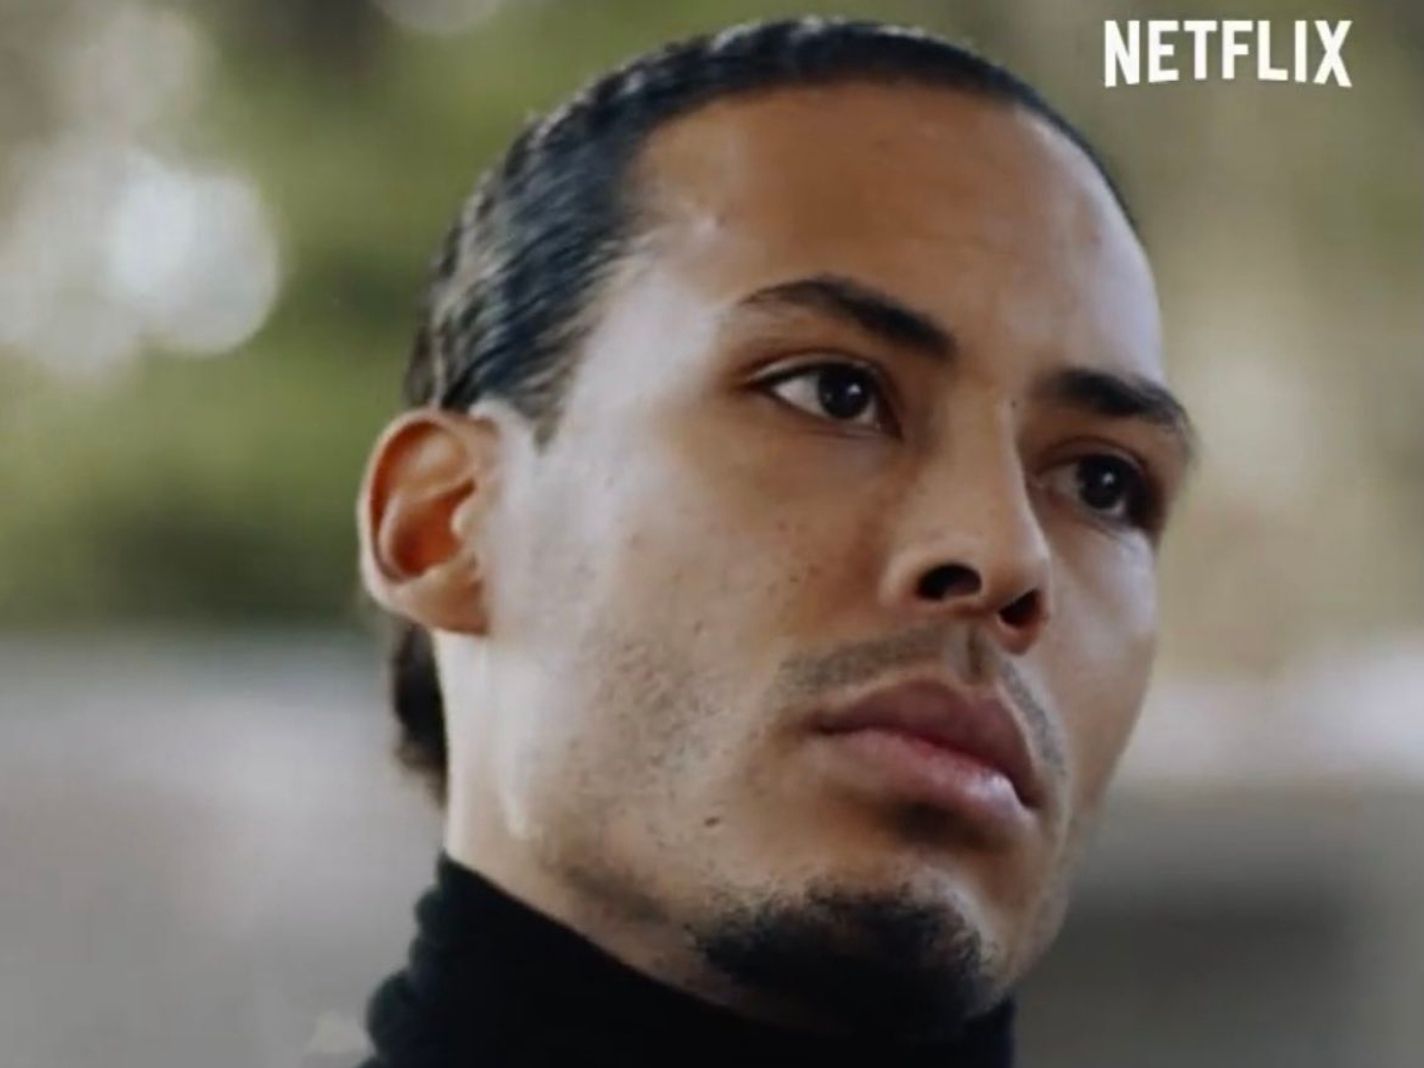 Virgil van Dijk appears in promo for Netflix show